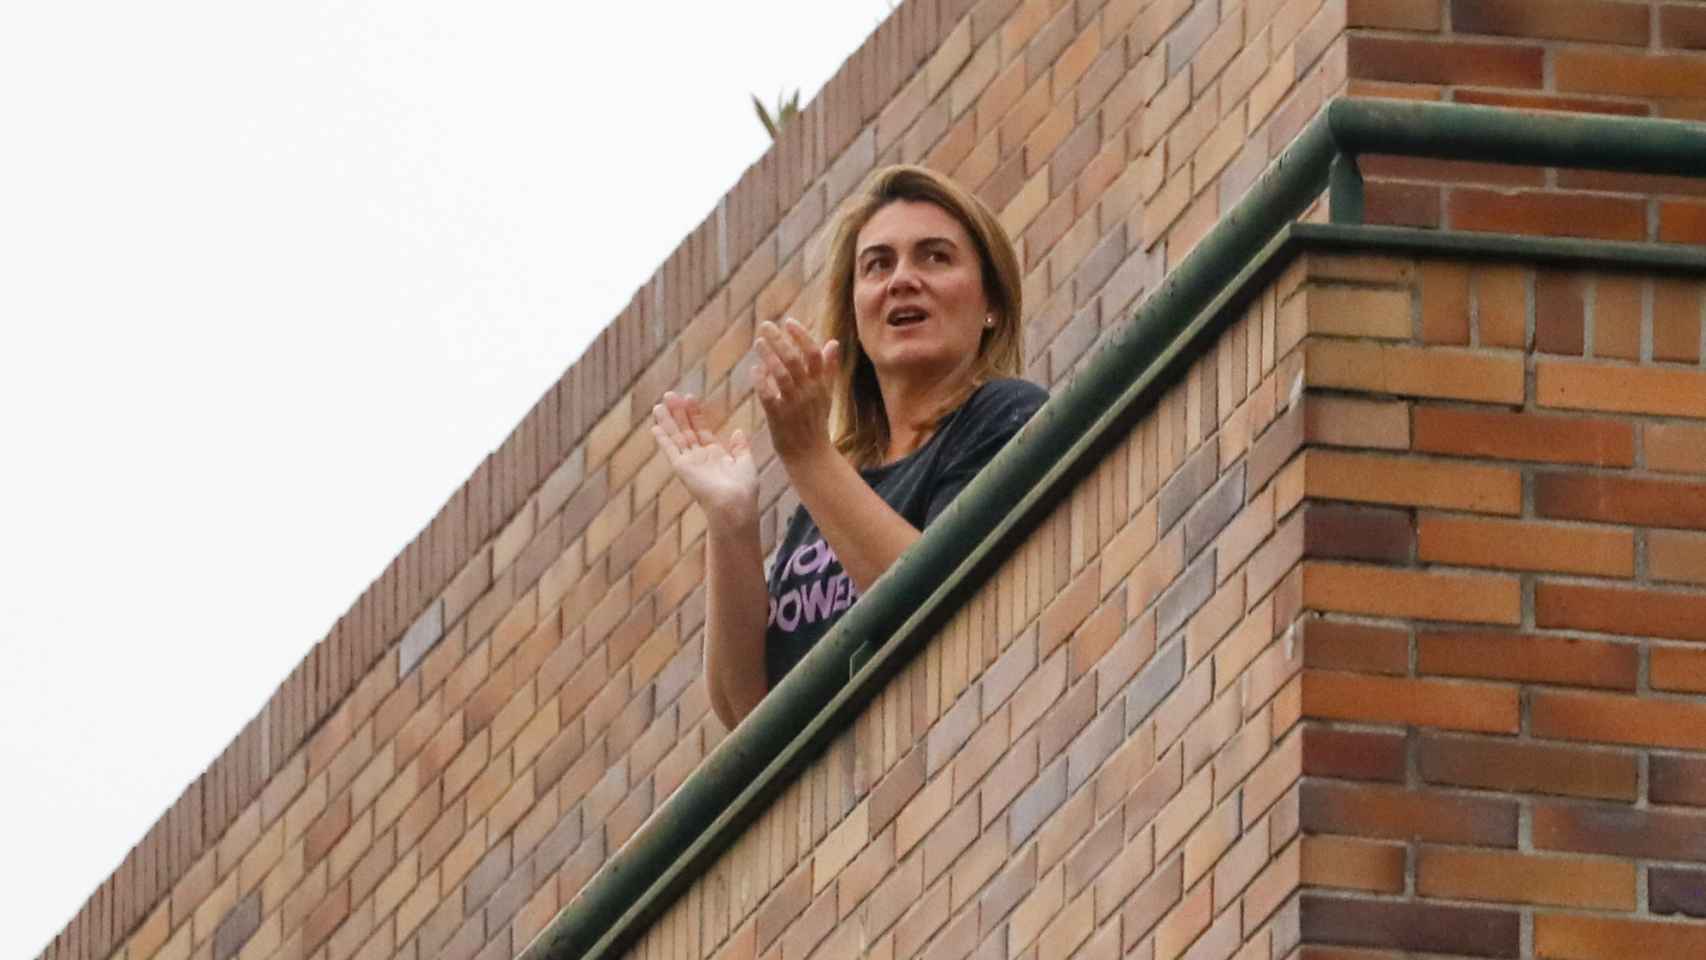 Carlota Corredera en su domicilio madrileño aplaudiendo a los sanitarios durante el confinamiento.